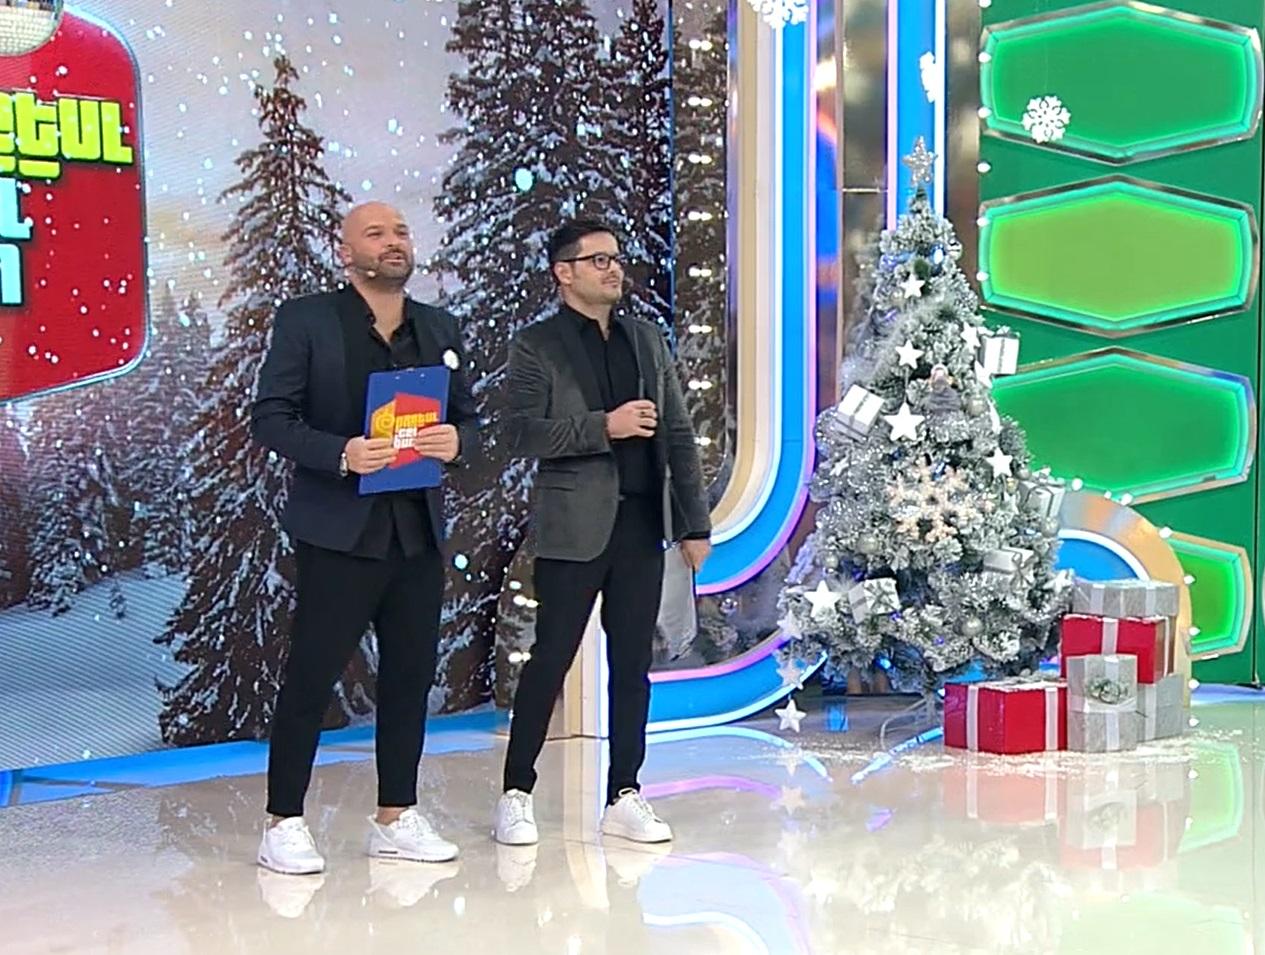 Liviu Vârciu și Andrei Ștefănescu la emisiunea pretul cel bun